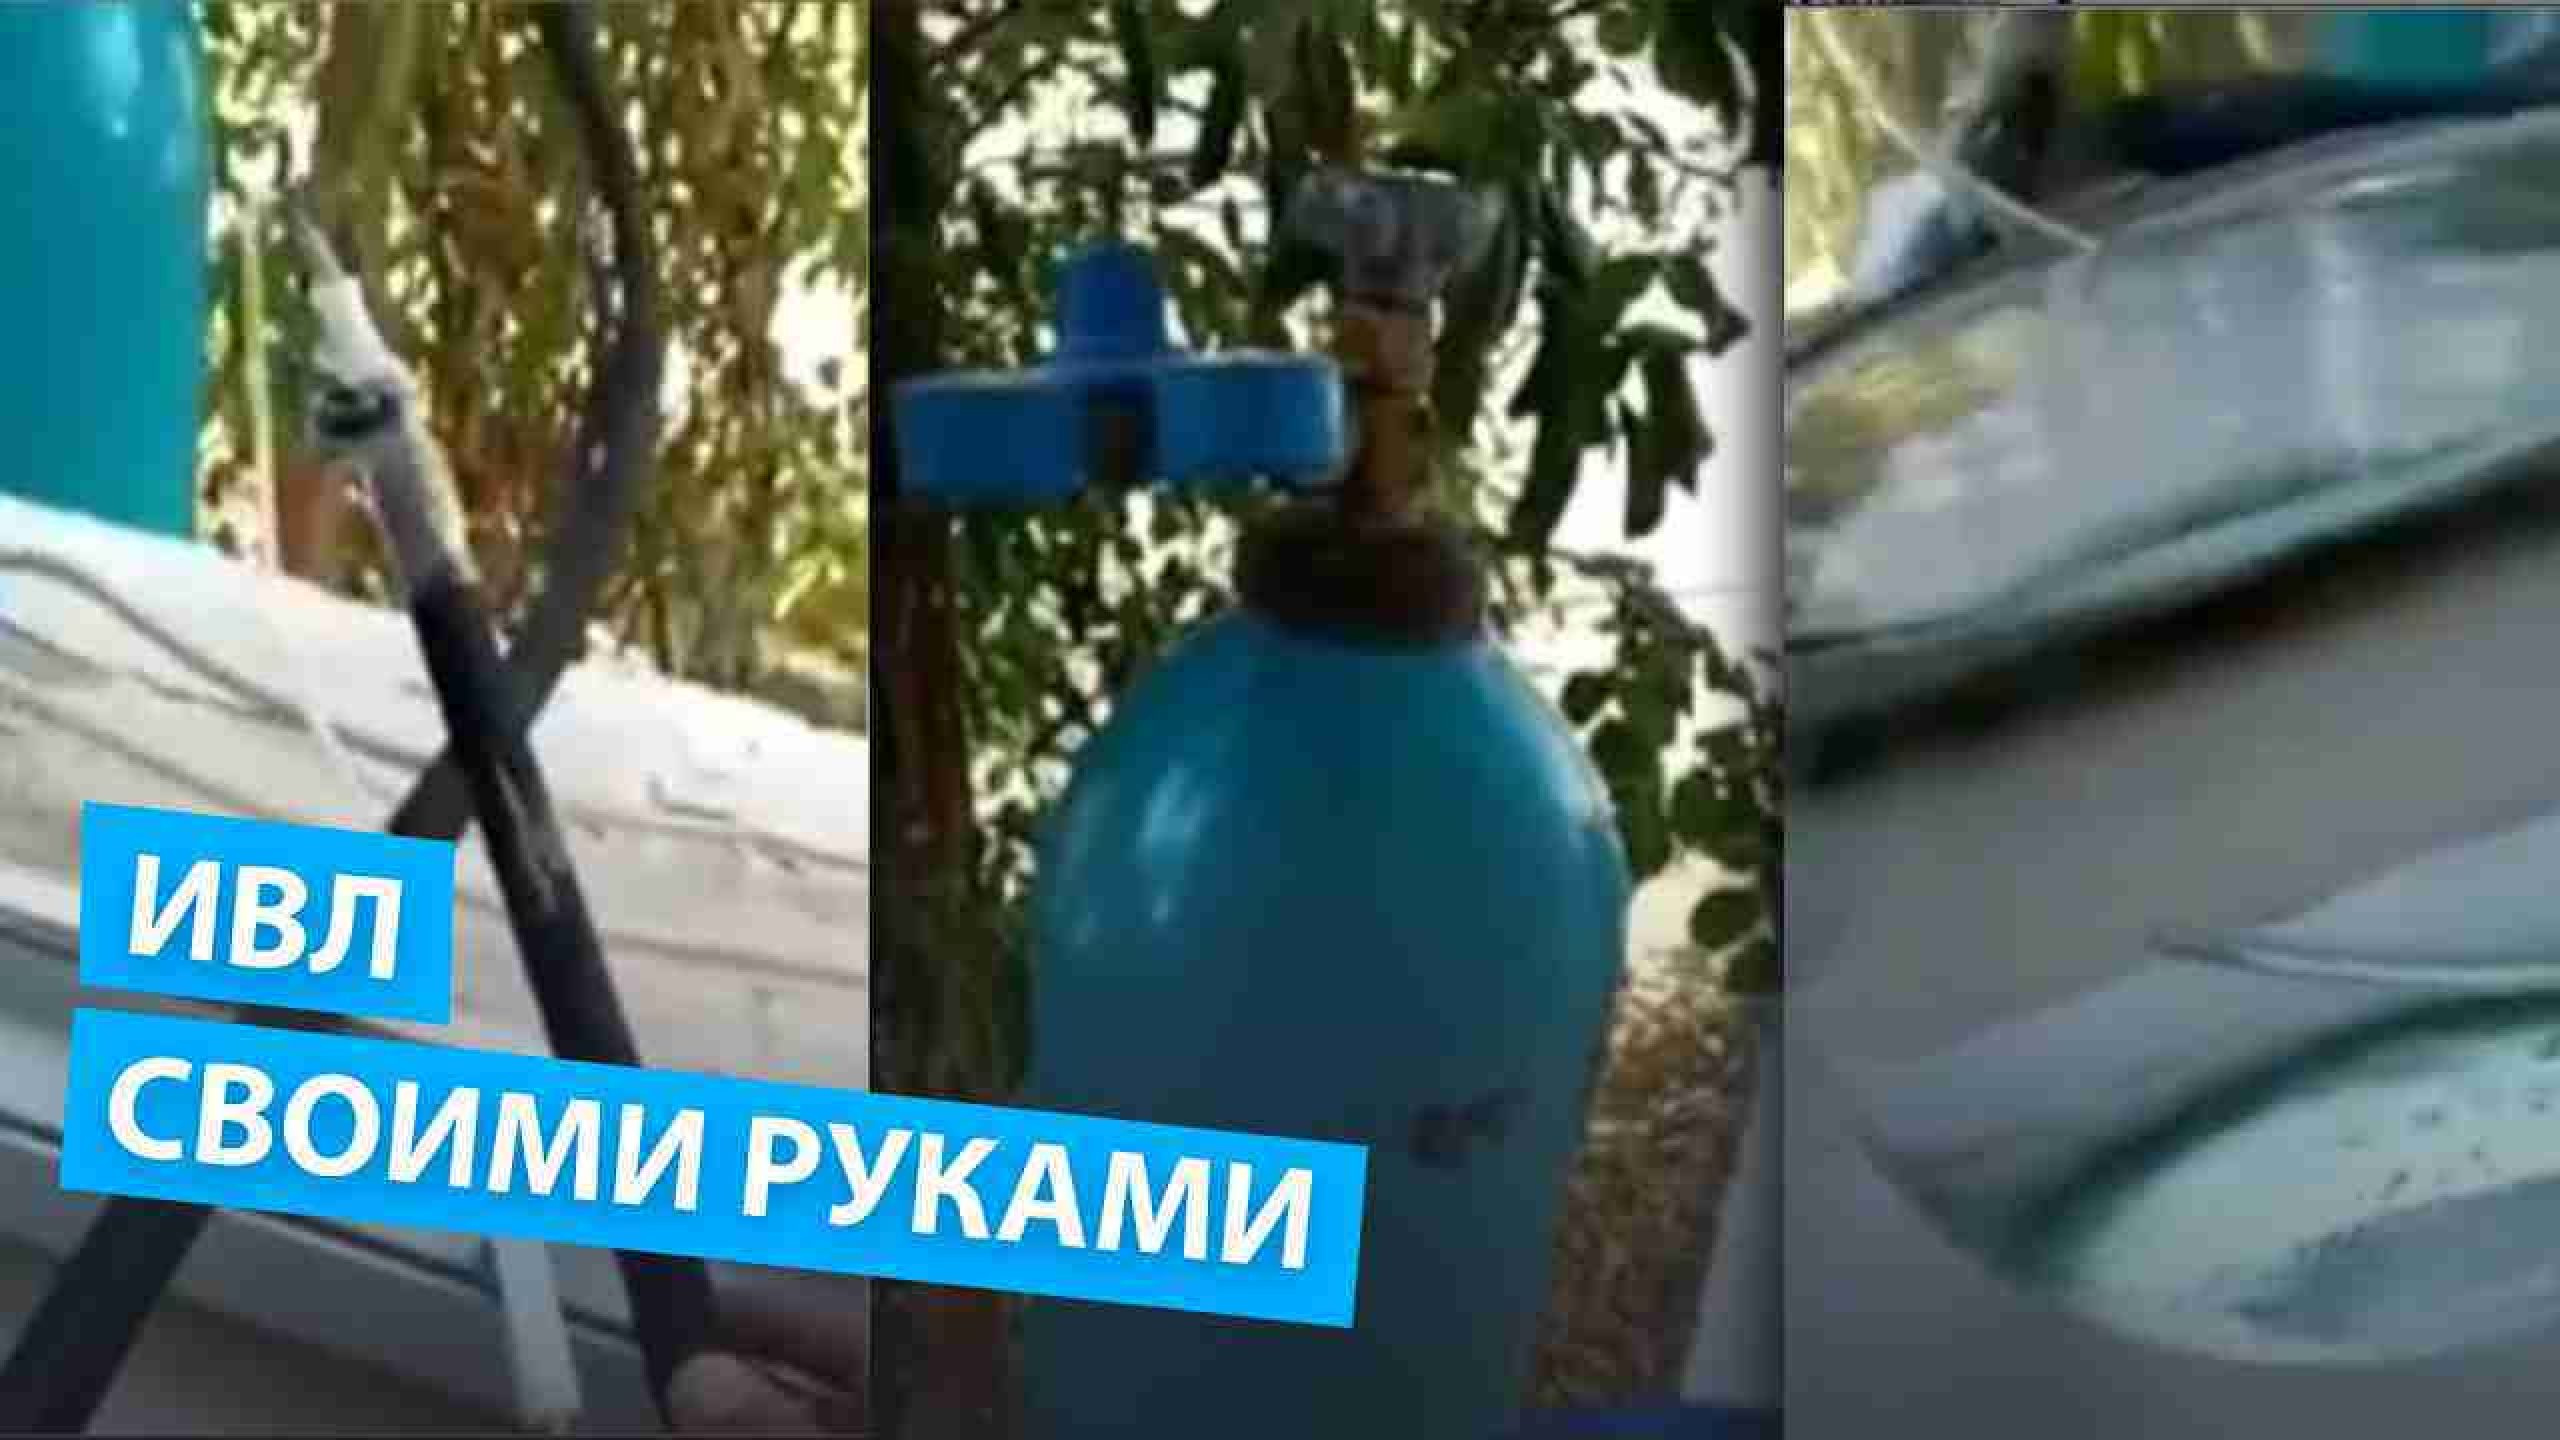 Дефицит ИВЛ в Казахстане заставил школьника сделать аппарат самостоятельно